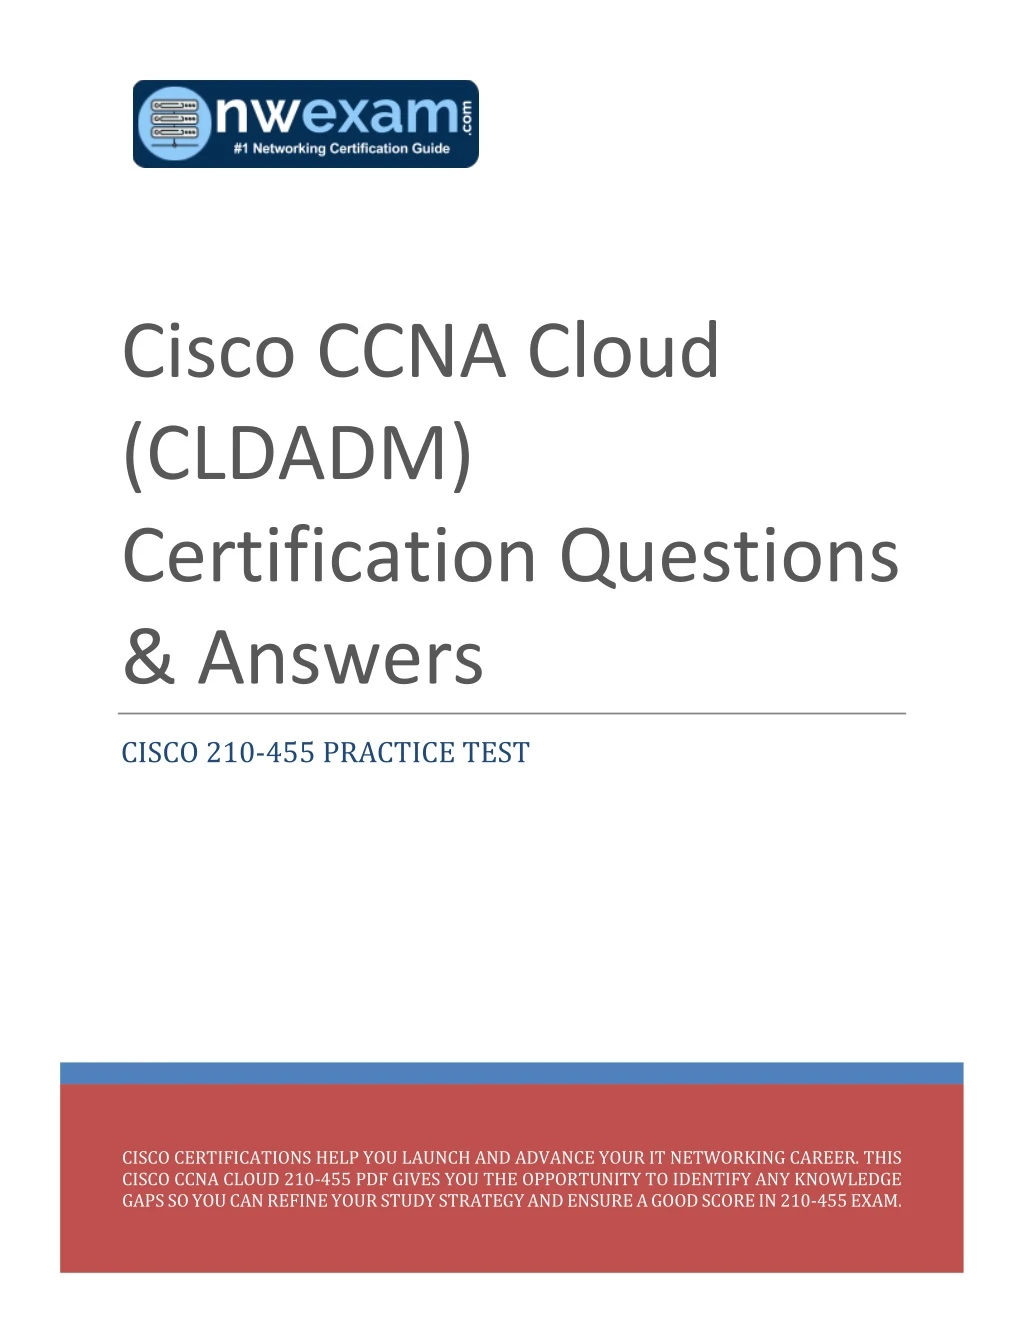 cisco ccna cloud cldadm certification questions